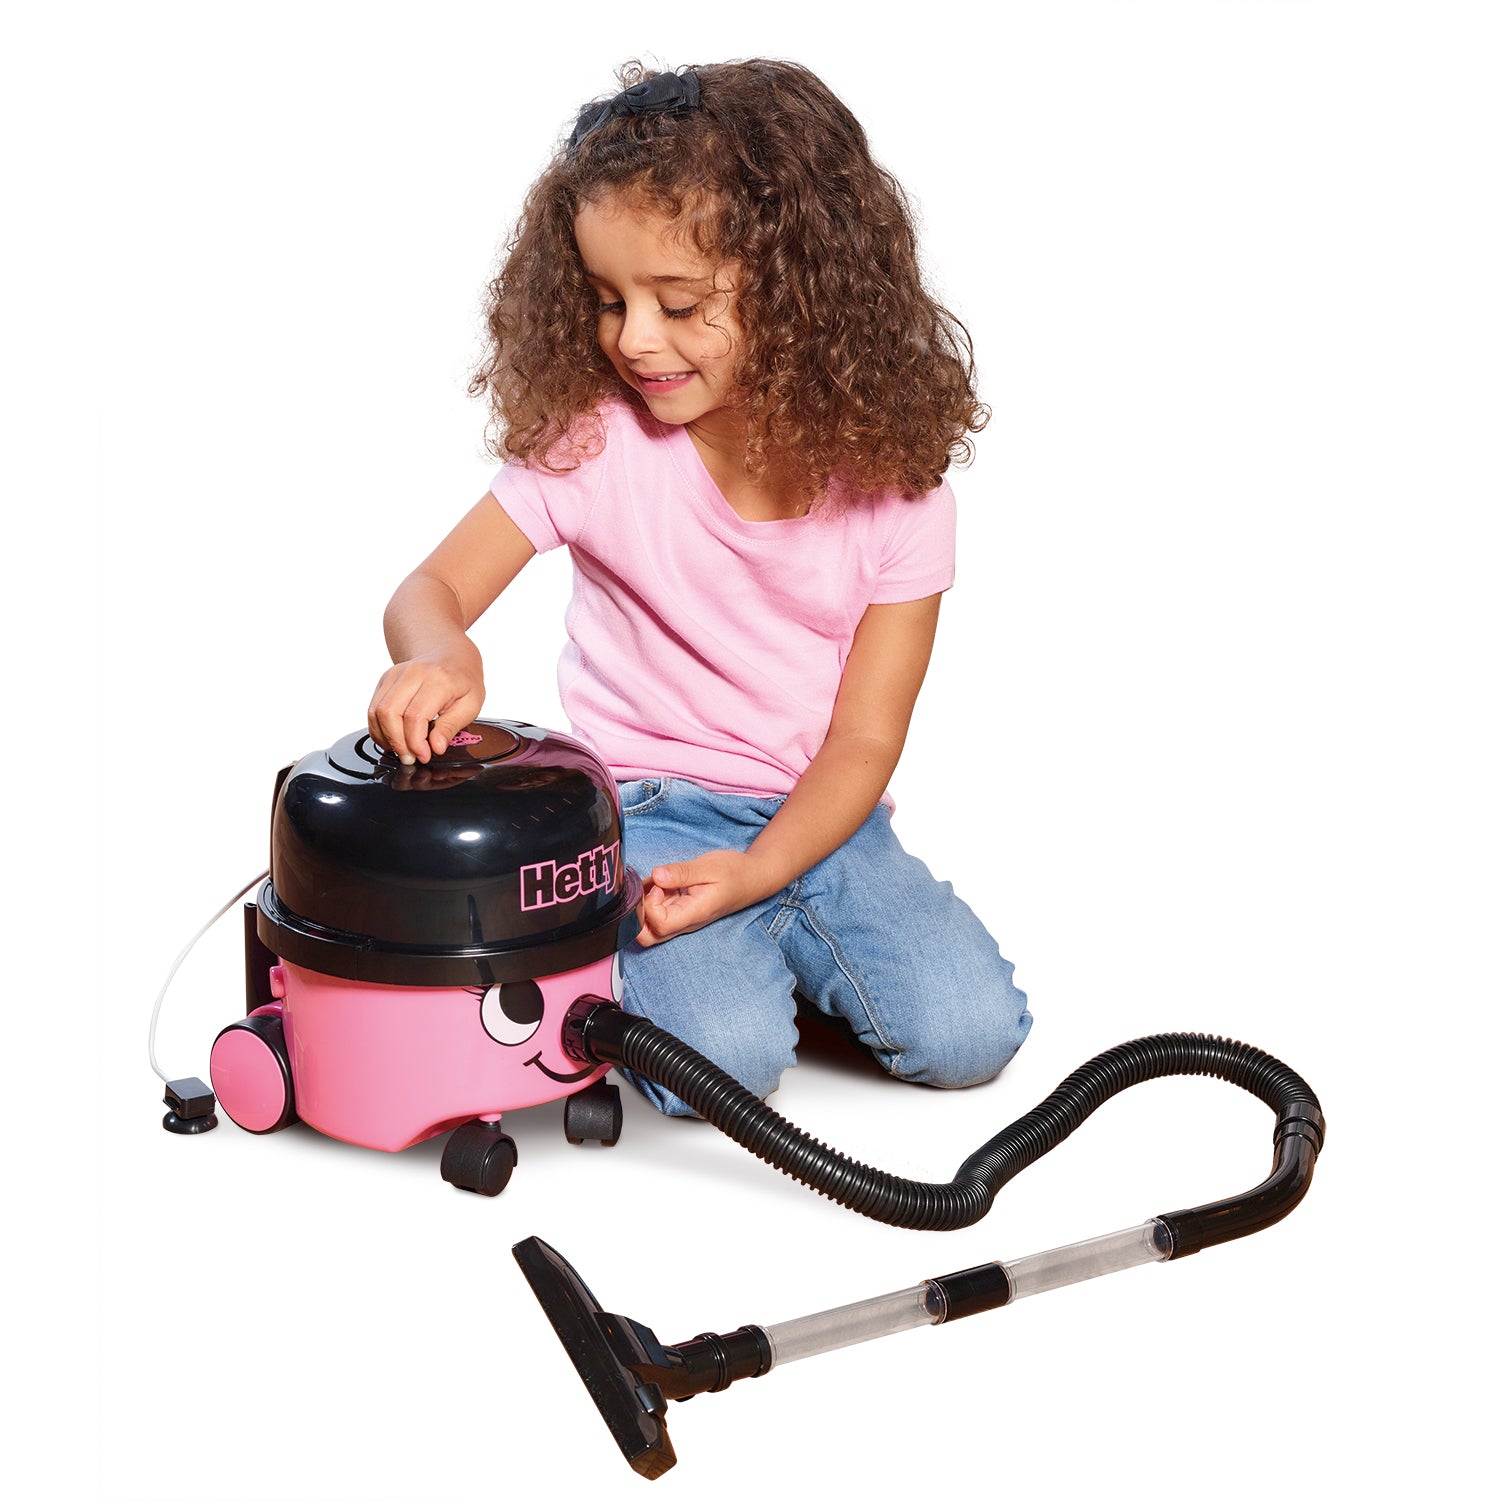 Casdon - Hetty Vacuum Cleaner Toy